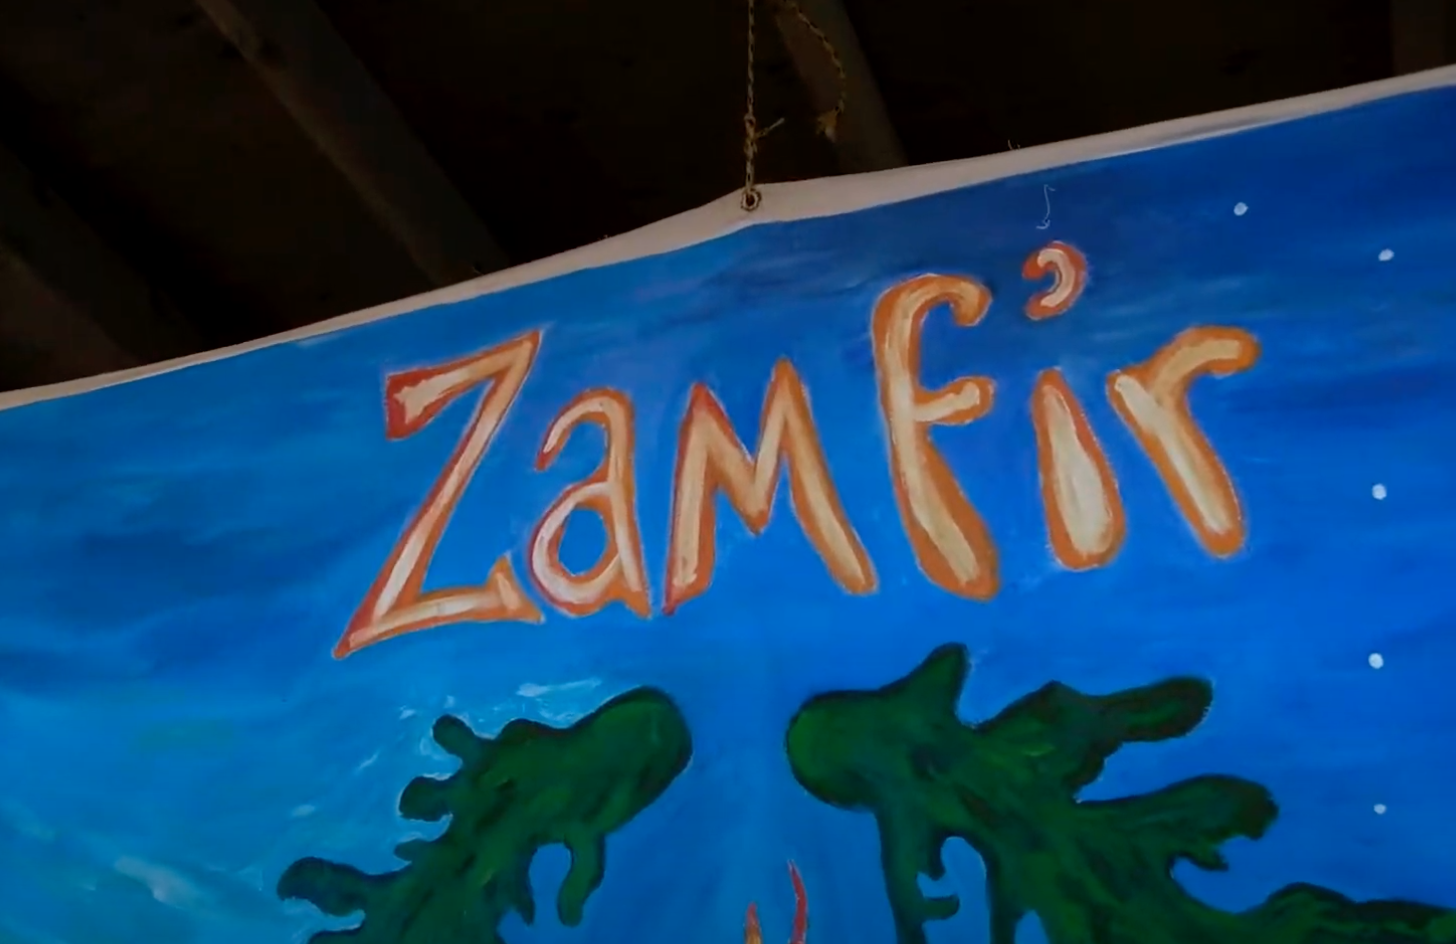 ZAMFIR 2019